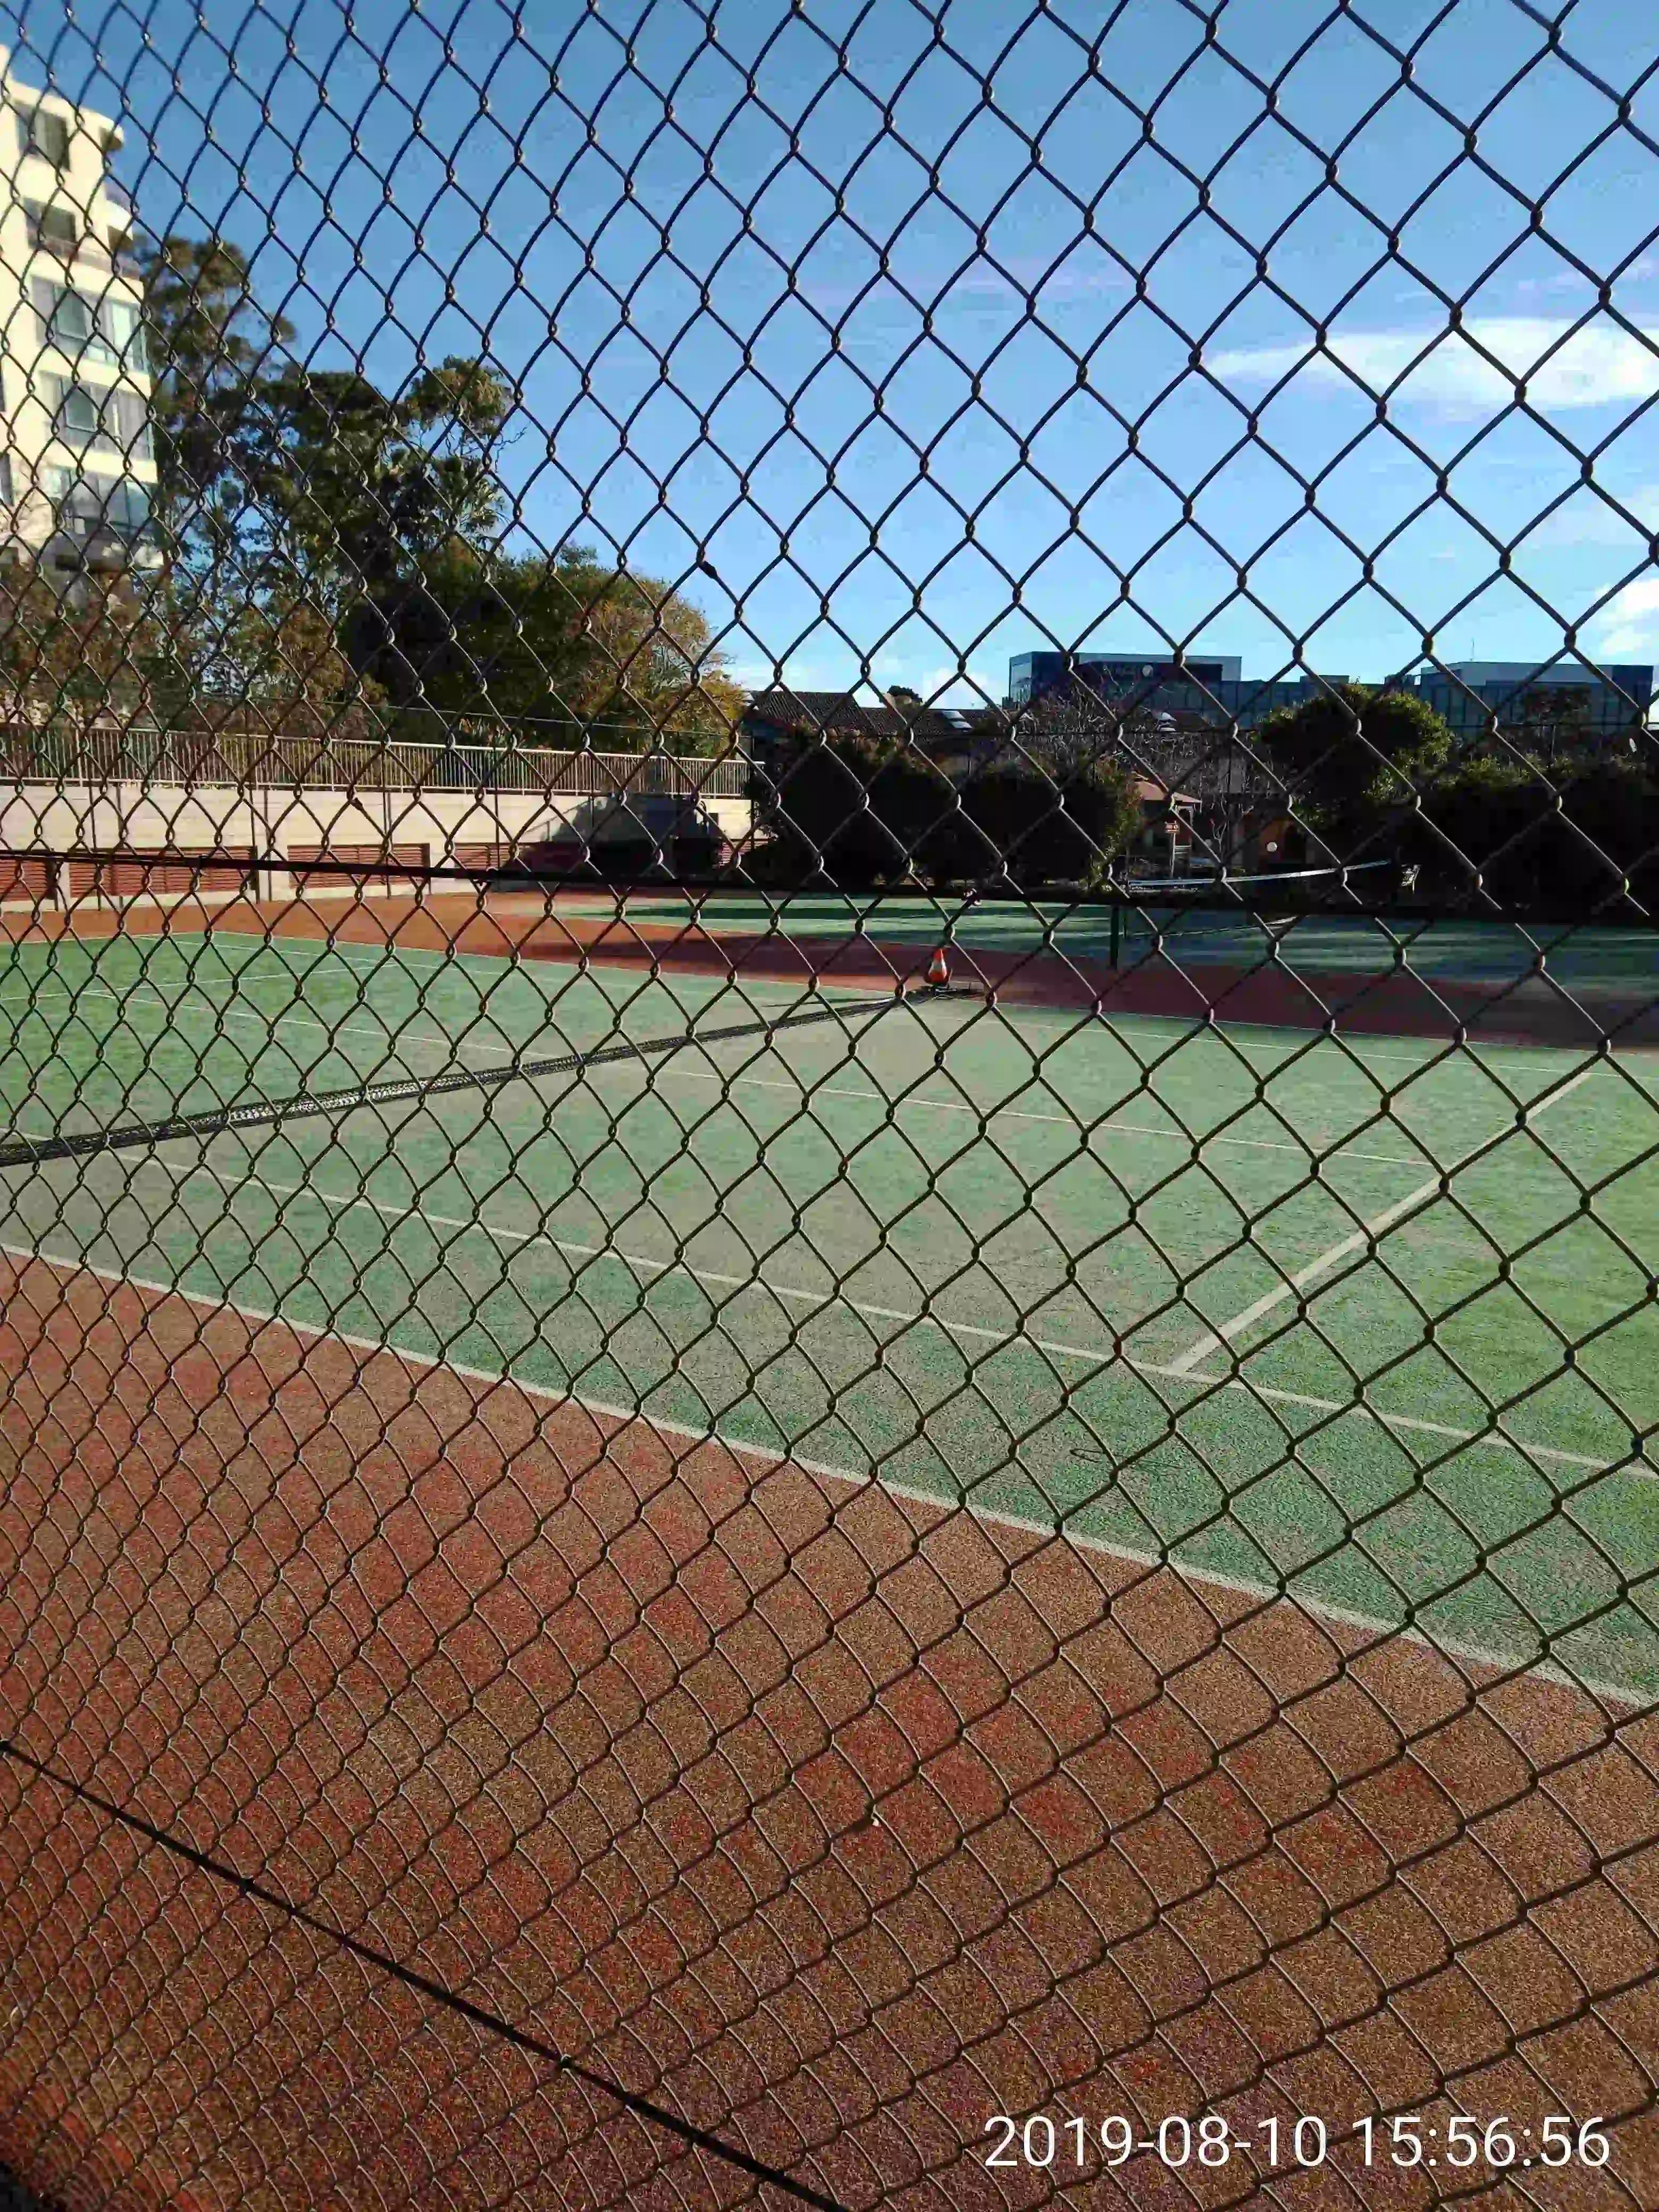 SP52948-tennis-court-2-damage-10Aug2019.webp